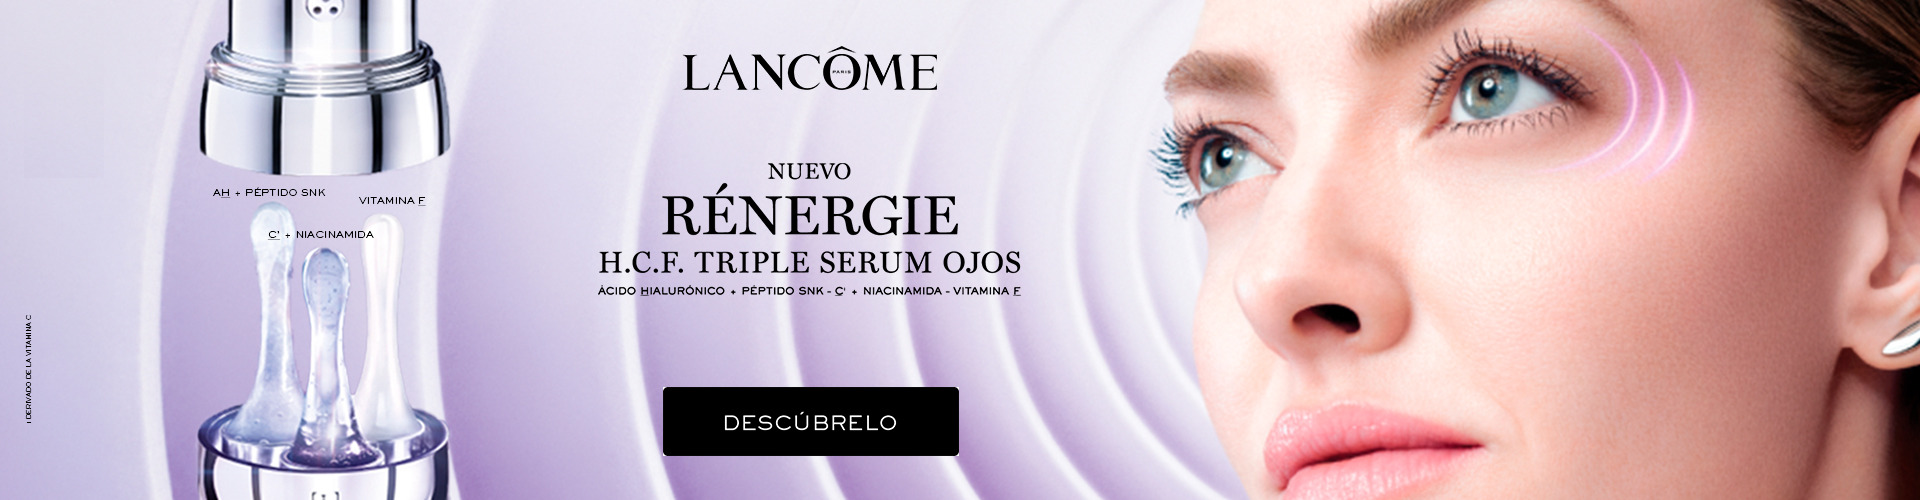 Lancôme | Nuevo Renergie H.C.F. Triple Serum Ojos | Prieto.es